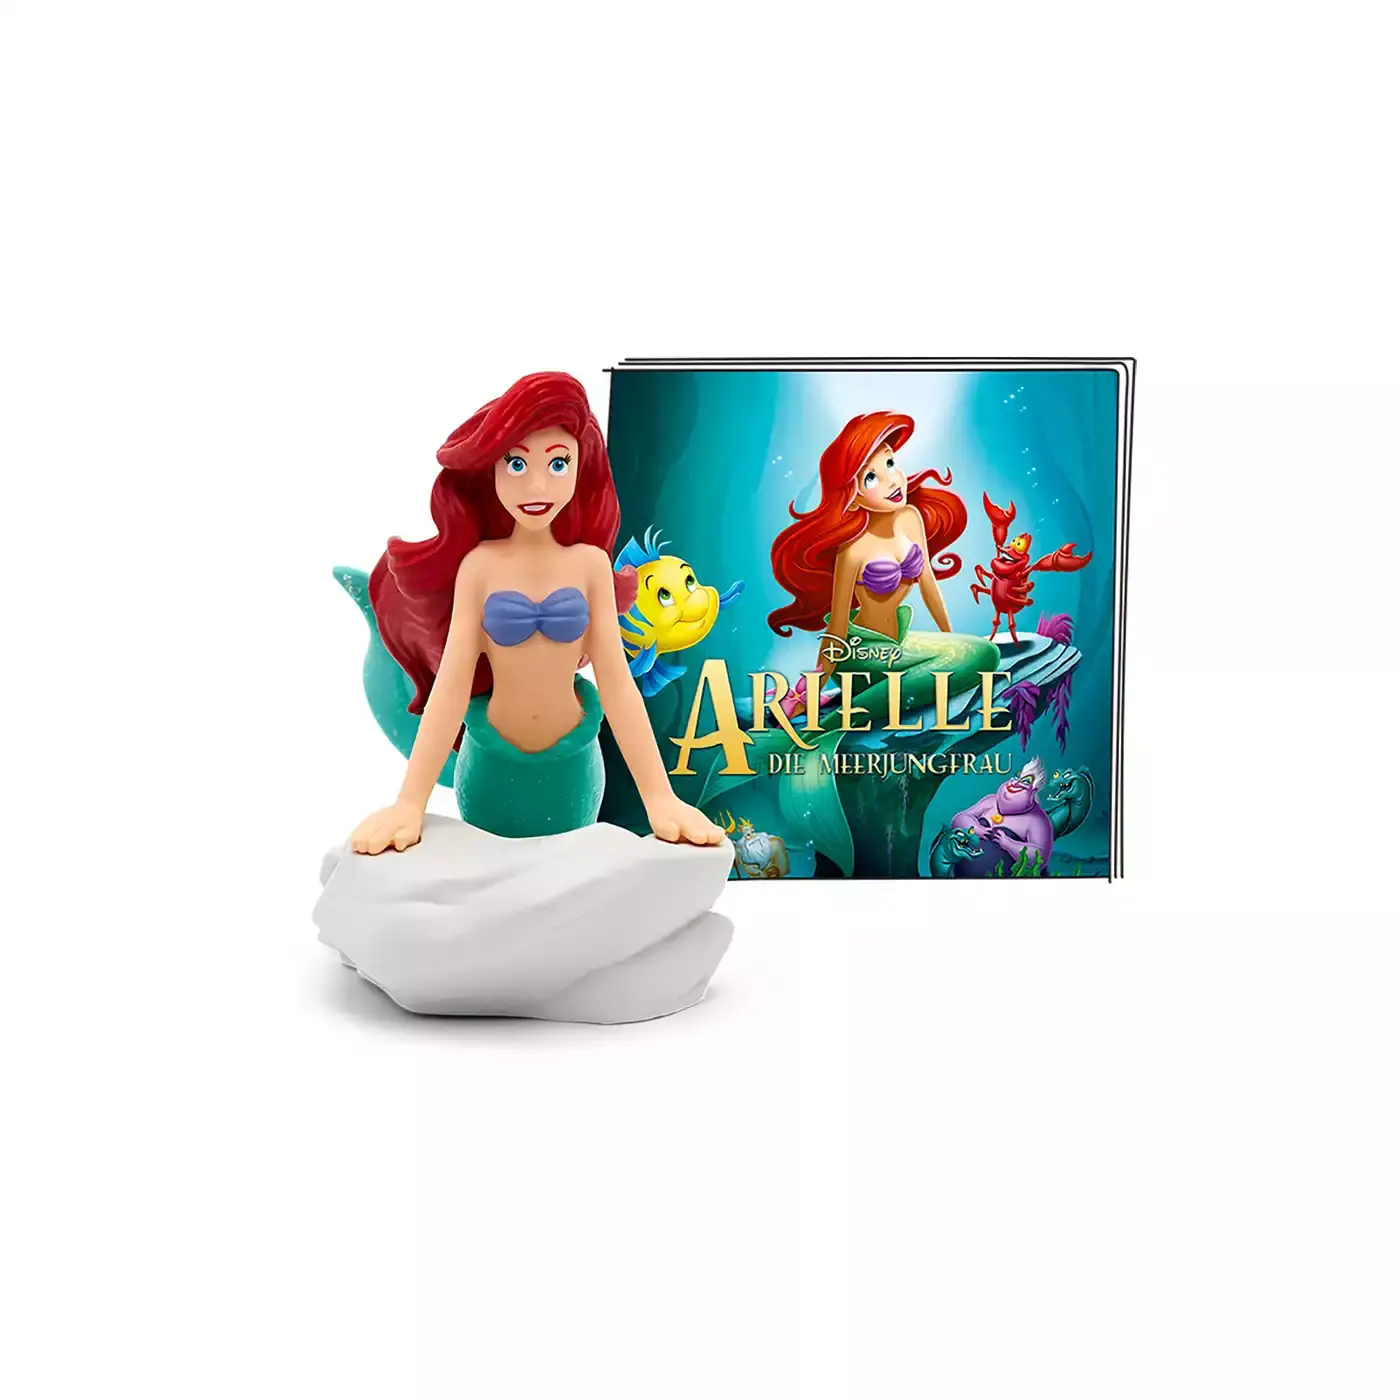 Disney - Arielle die Meerjungfrau tonies 2000577631803 3